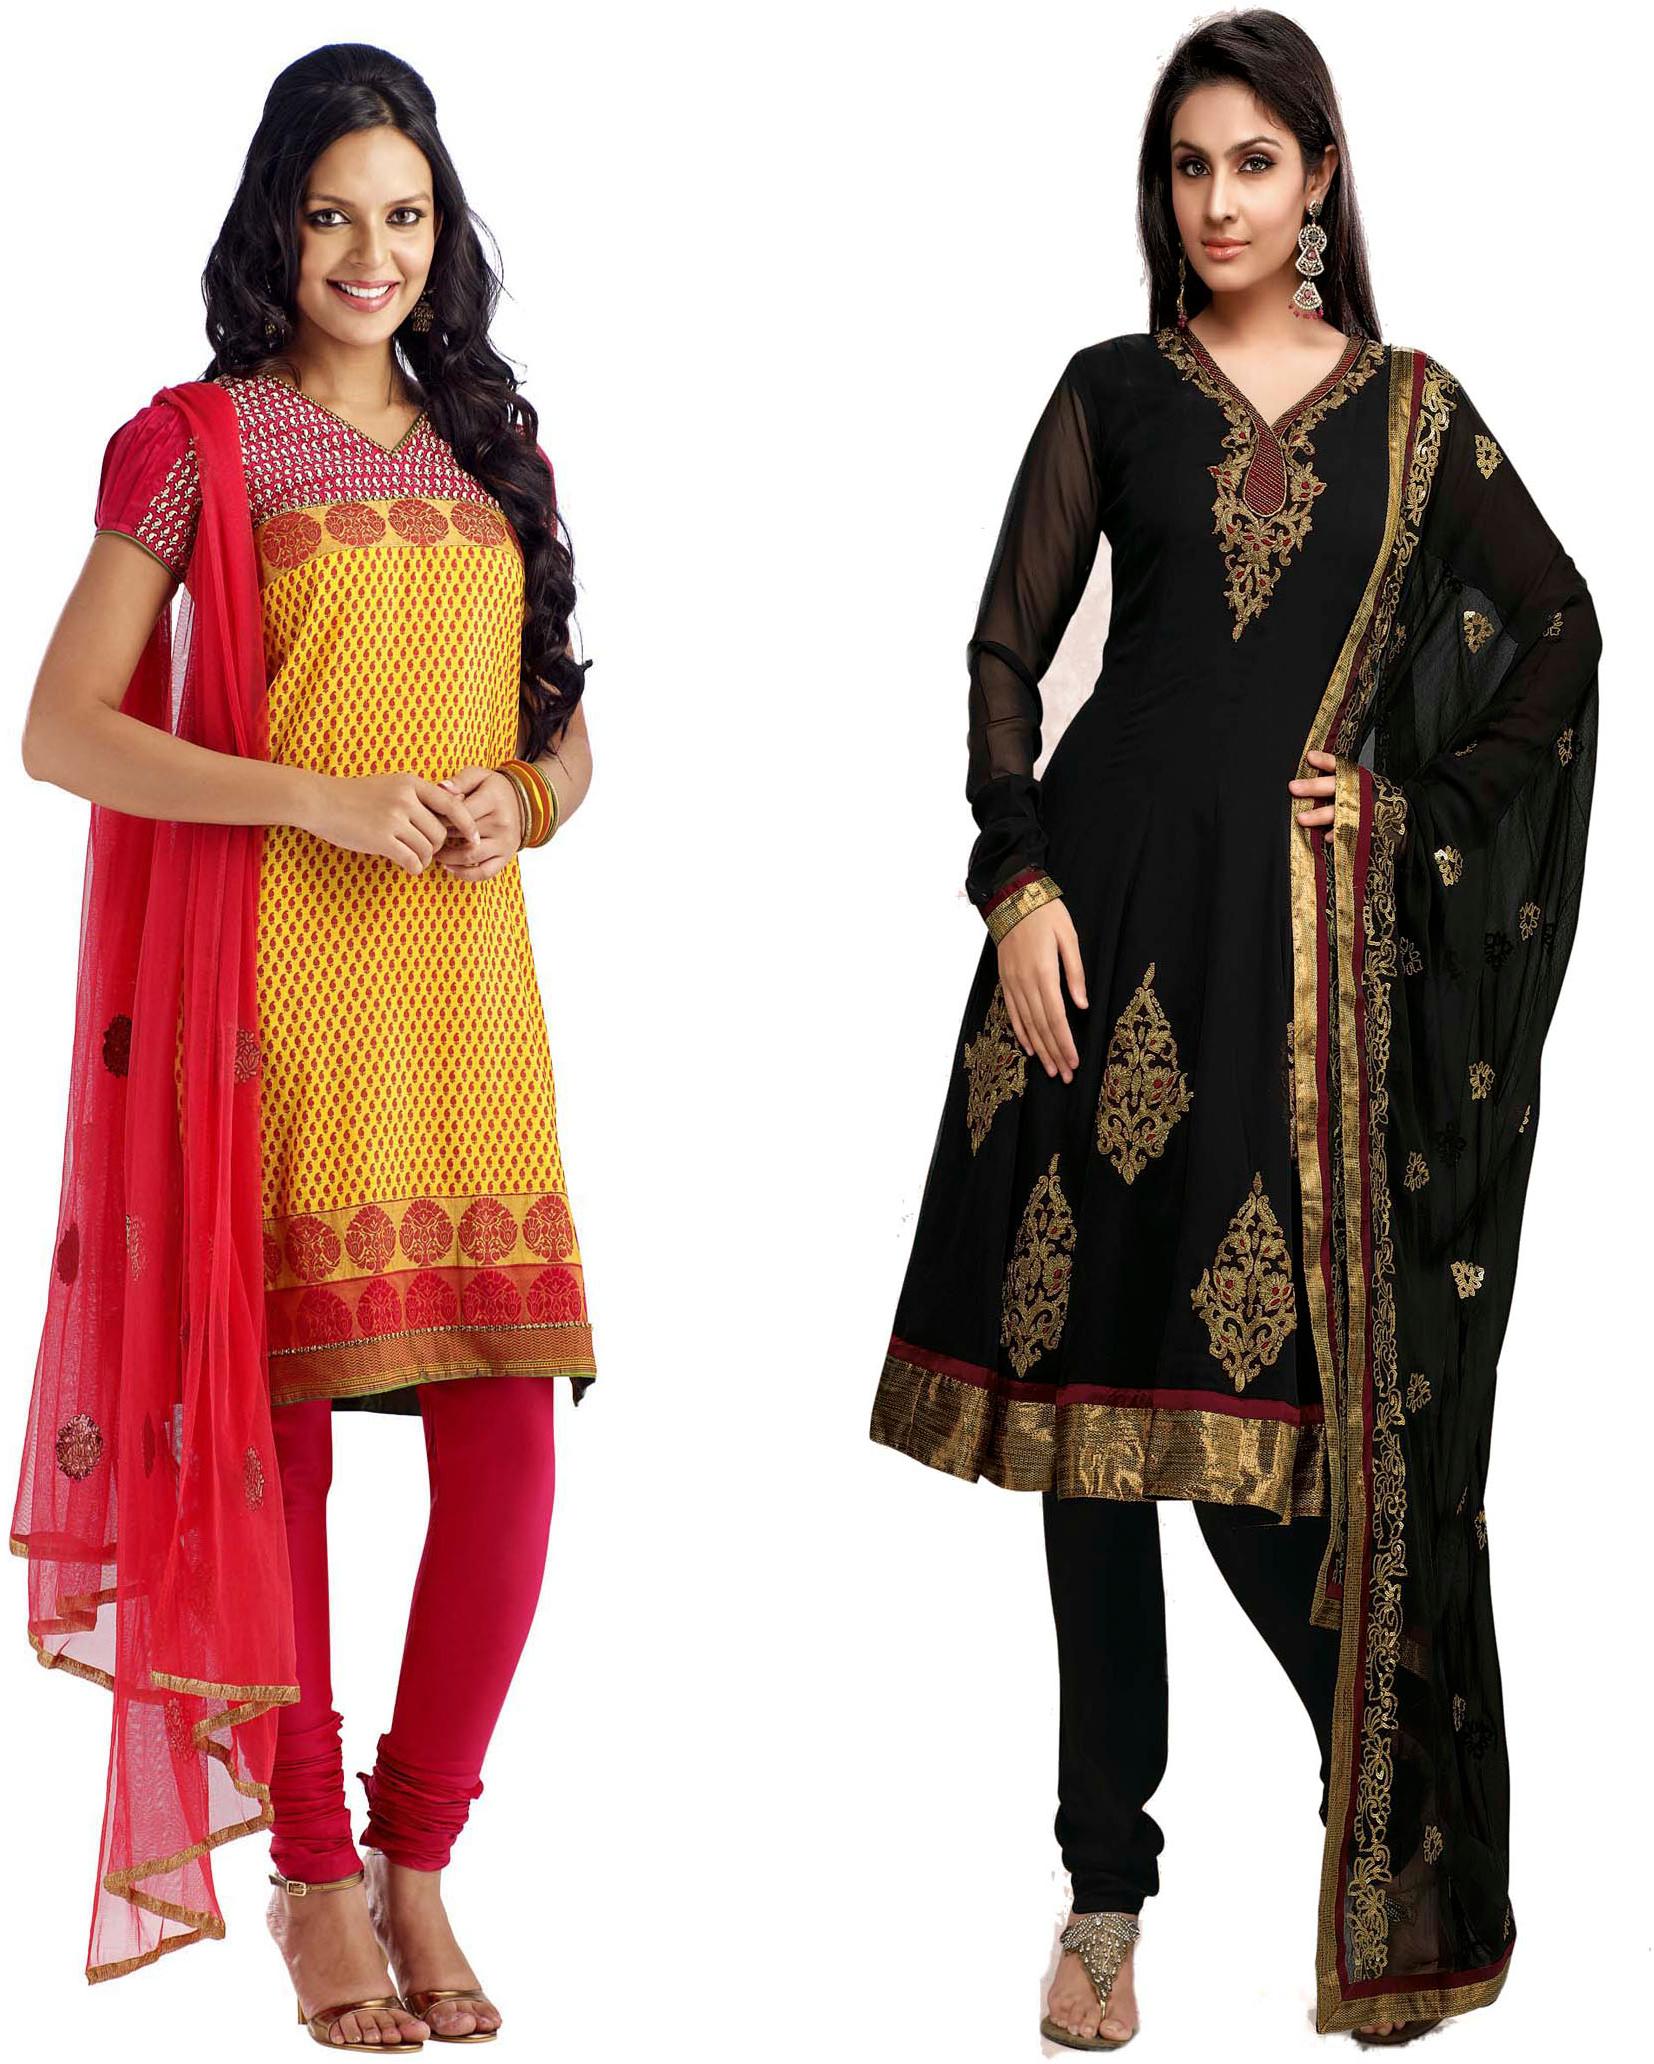 Ladies Churidar Suits at Best Price in Coimbatore